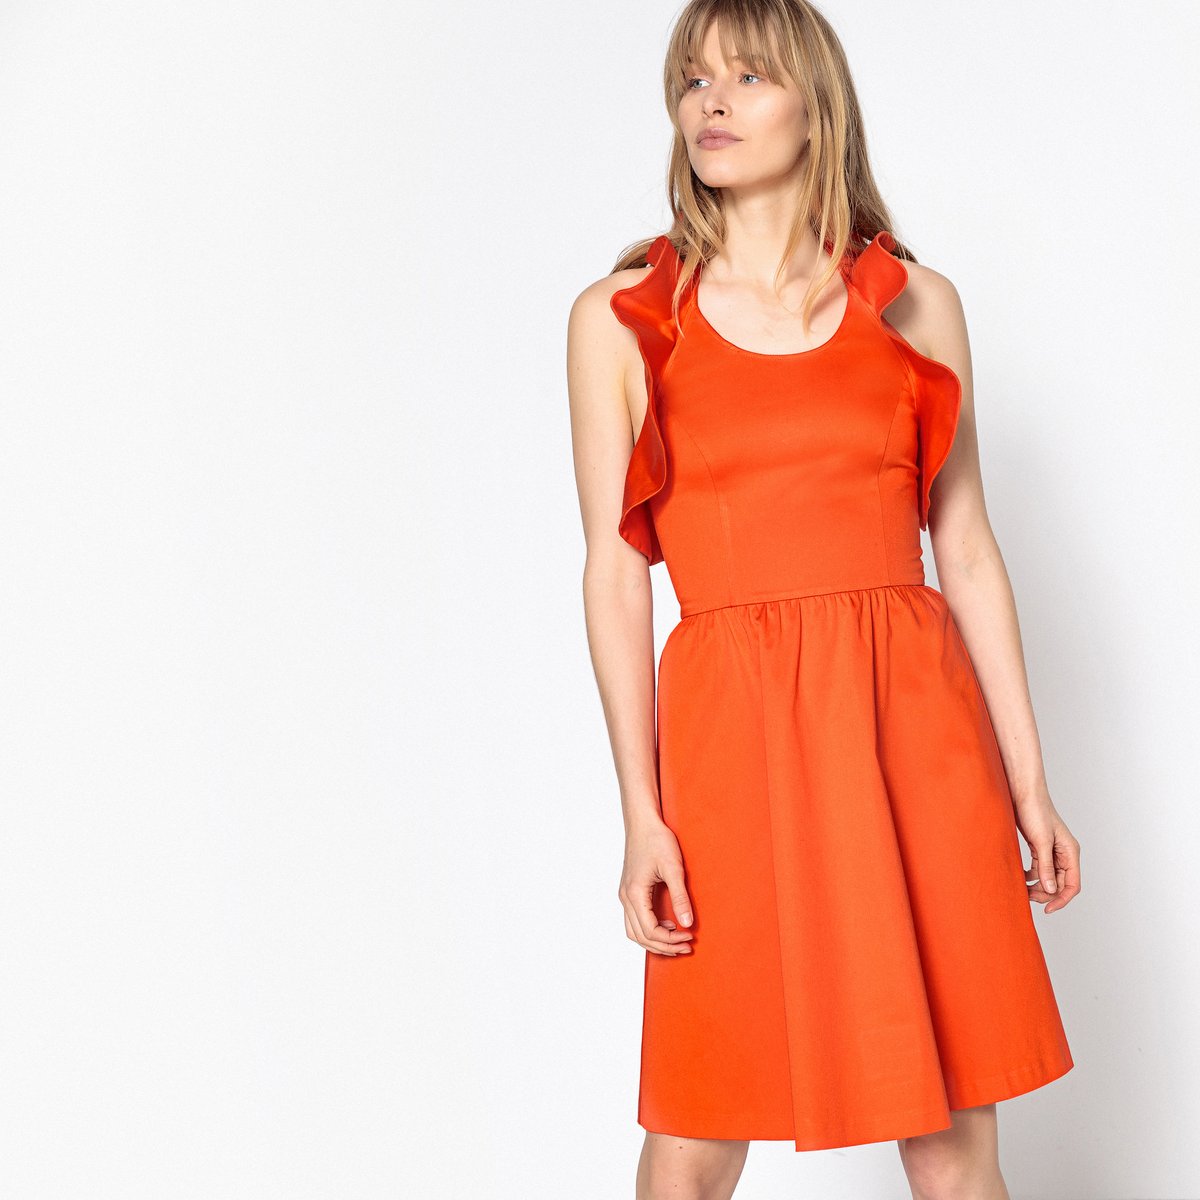 Платье La Redoute Расклешенное с открытой спинкой и воланами 44 (FR) - 50 (RUS) оранжевый, размер 44 (FR) - 50 (RUS) Расклешенное с открытой спинкой и воланами 44 (FR) - 50 (RUS) оранжевый - фото 4